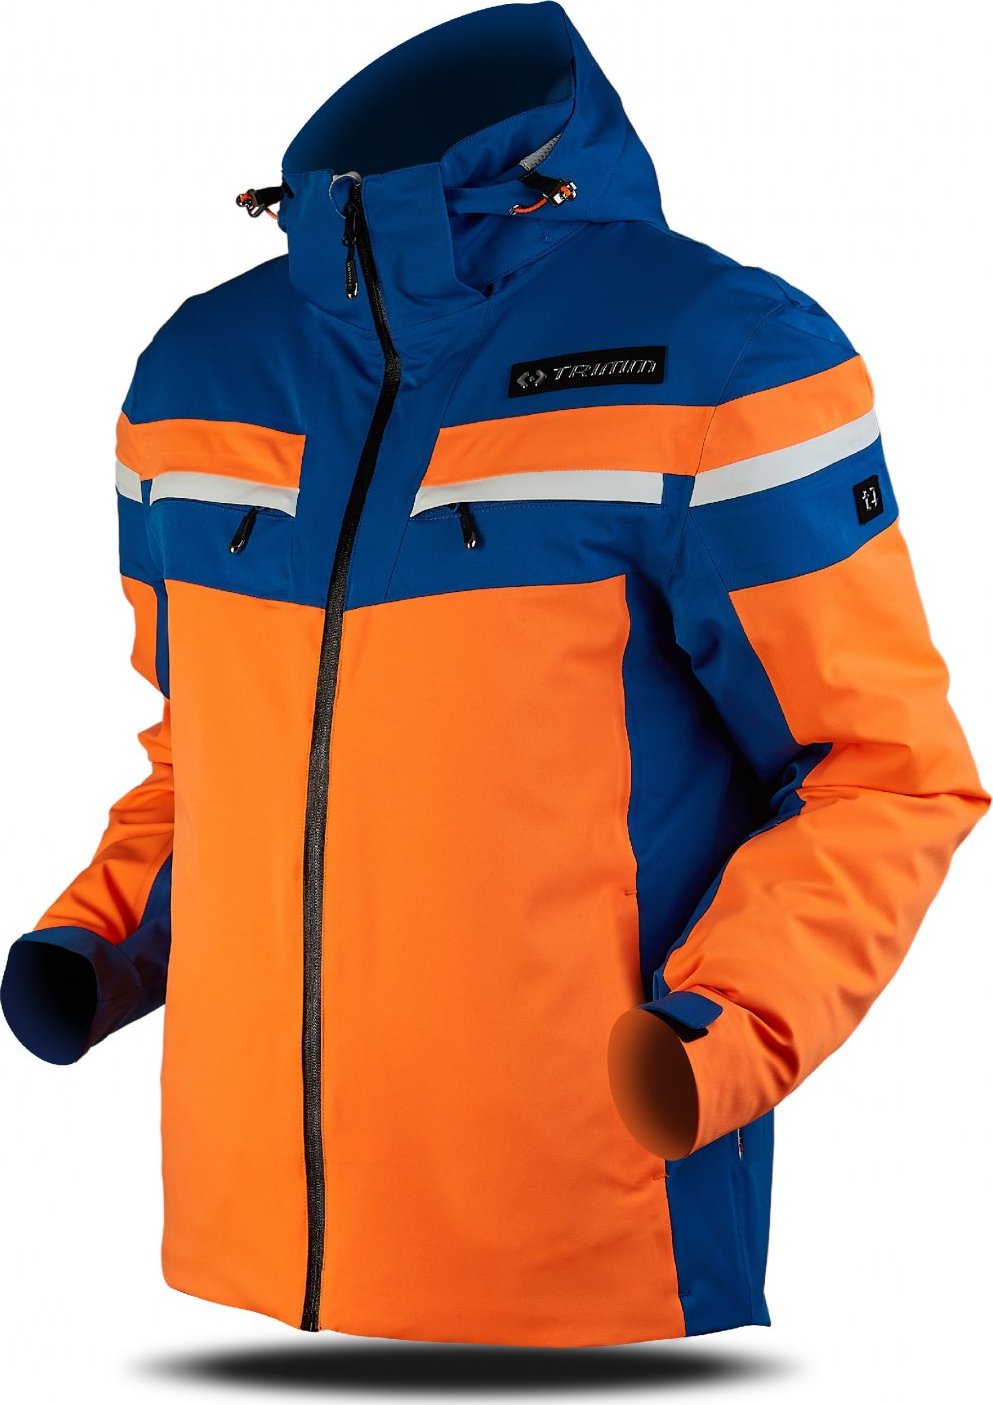 Pánská lyžařská bunda TRIMM Fusion oranžová Velikost: M, Barva: signal orange/jeans blue/white